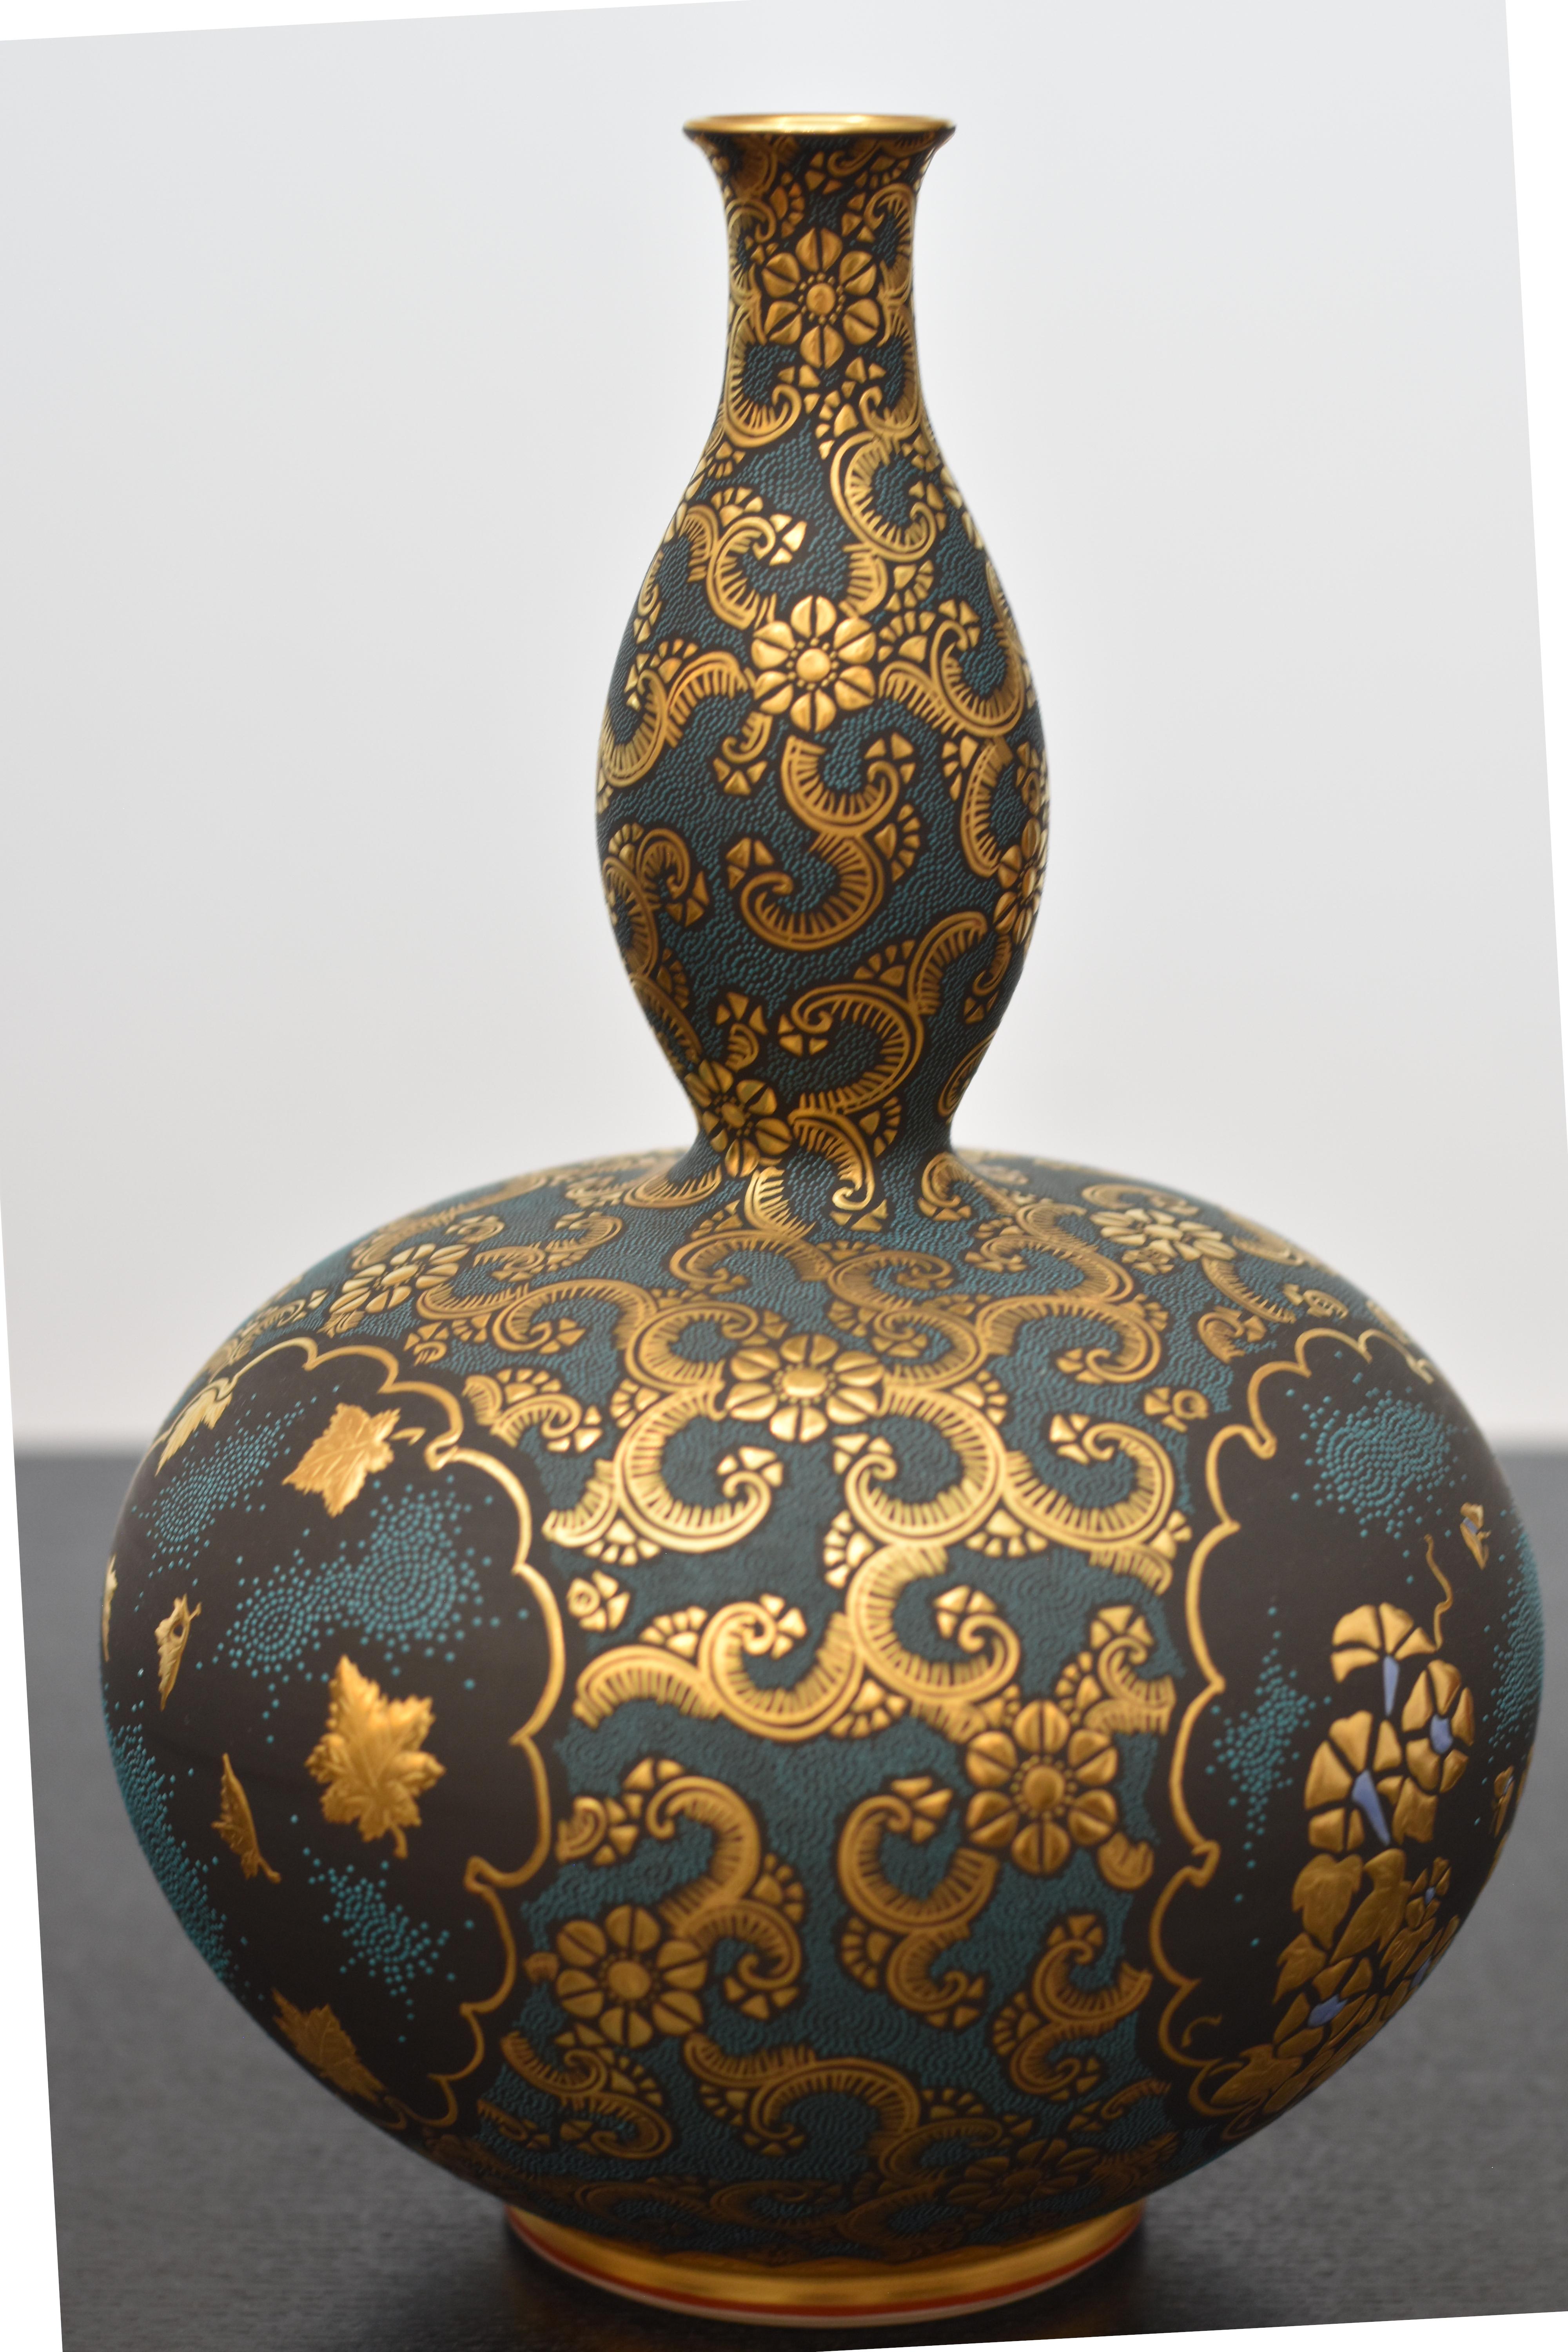 Extraordinaire vase japonais en porcelaine Kutani contemporaine de qualité muséale, peint à la main de manière extrêmement complexe avec des points 